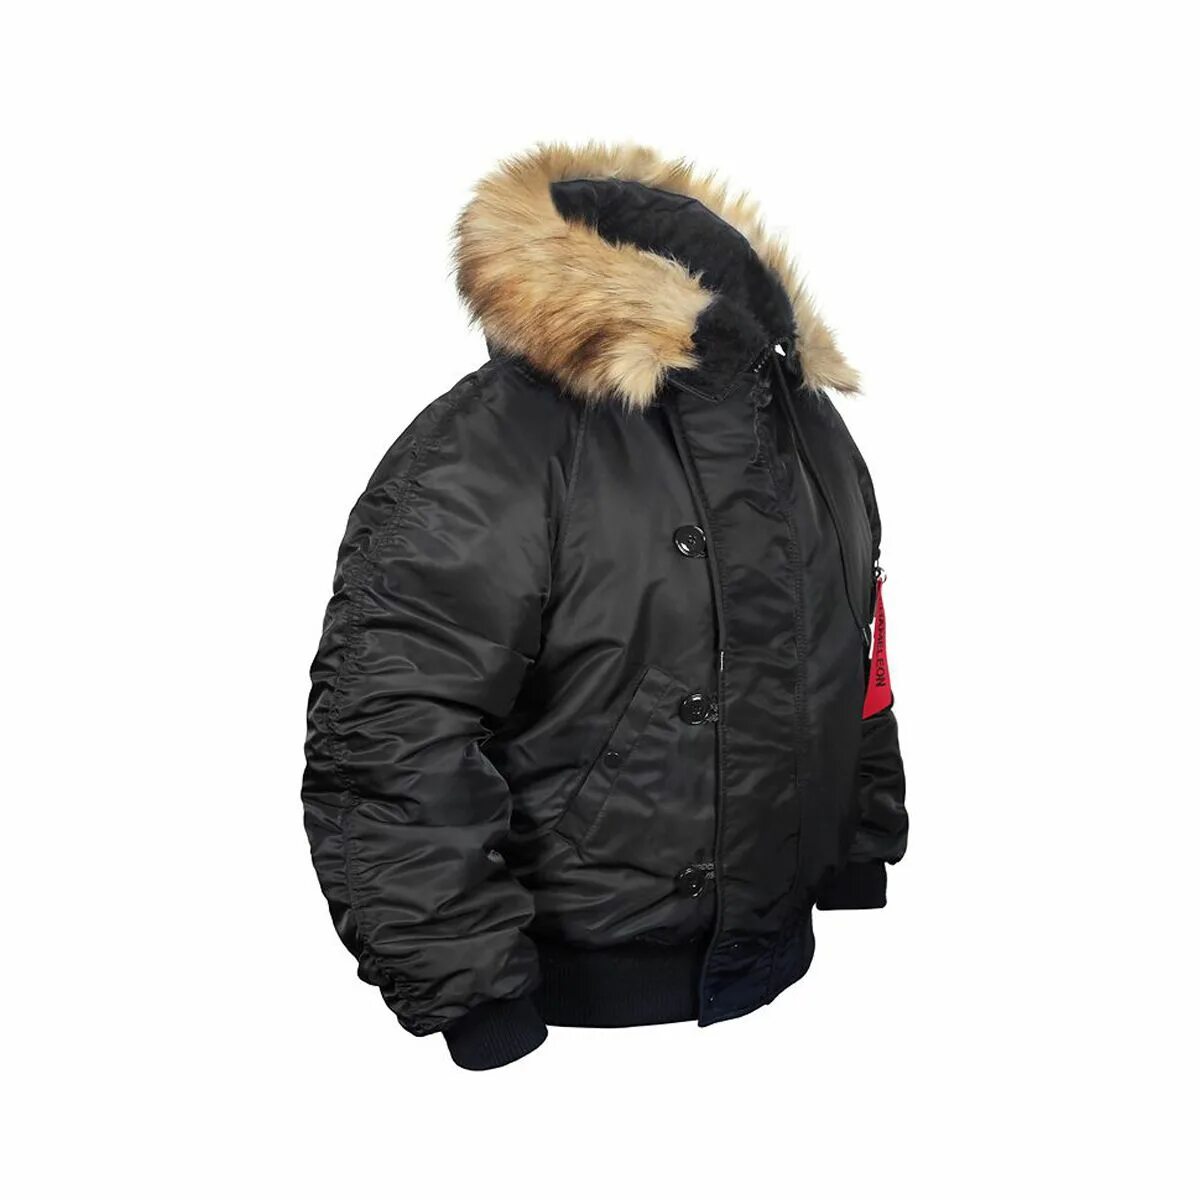 Куртка Аляска 2. Куртка Аляска укороченная n-2b. Куртка Аляска Nordland. Куртка Милтек Аляска мужская.